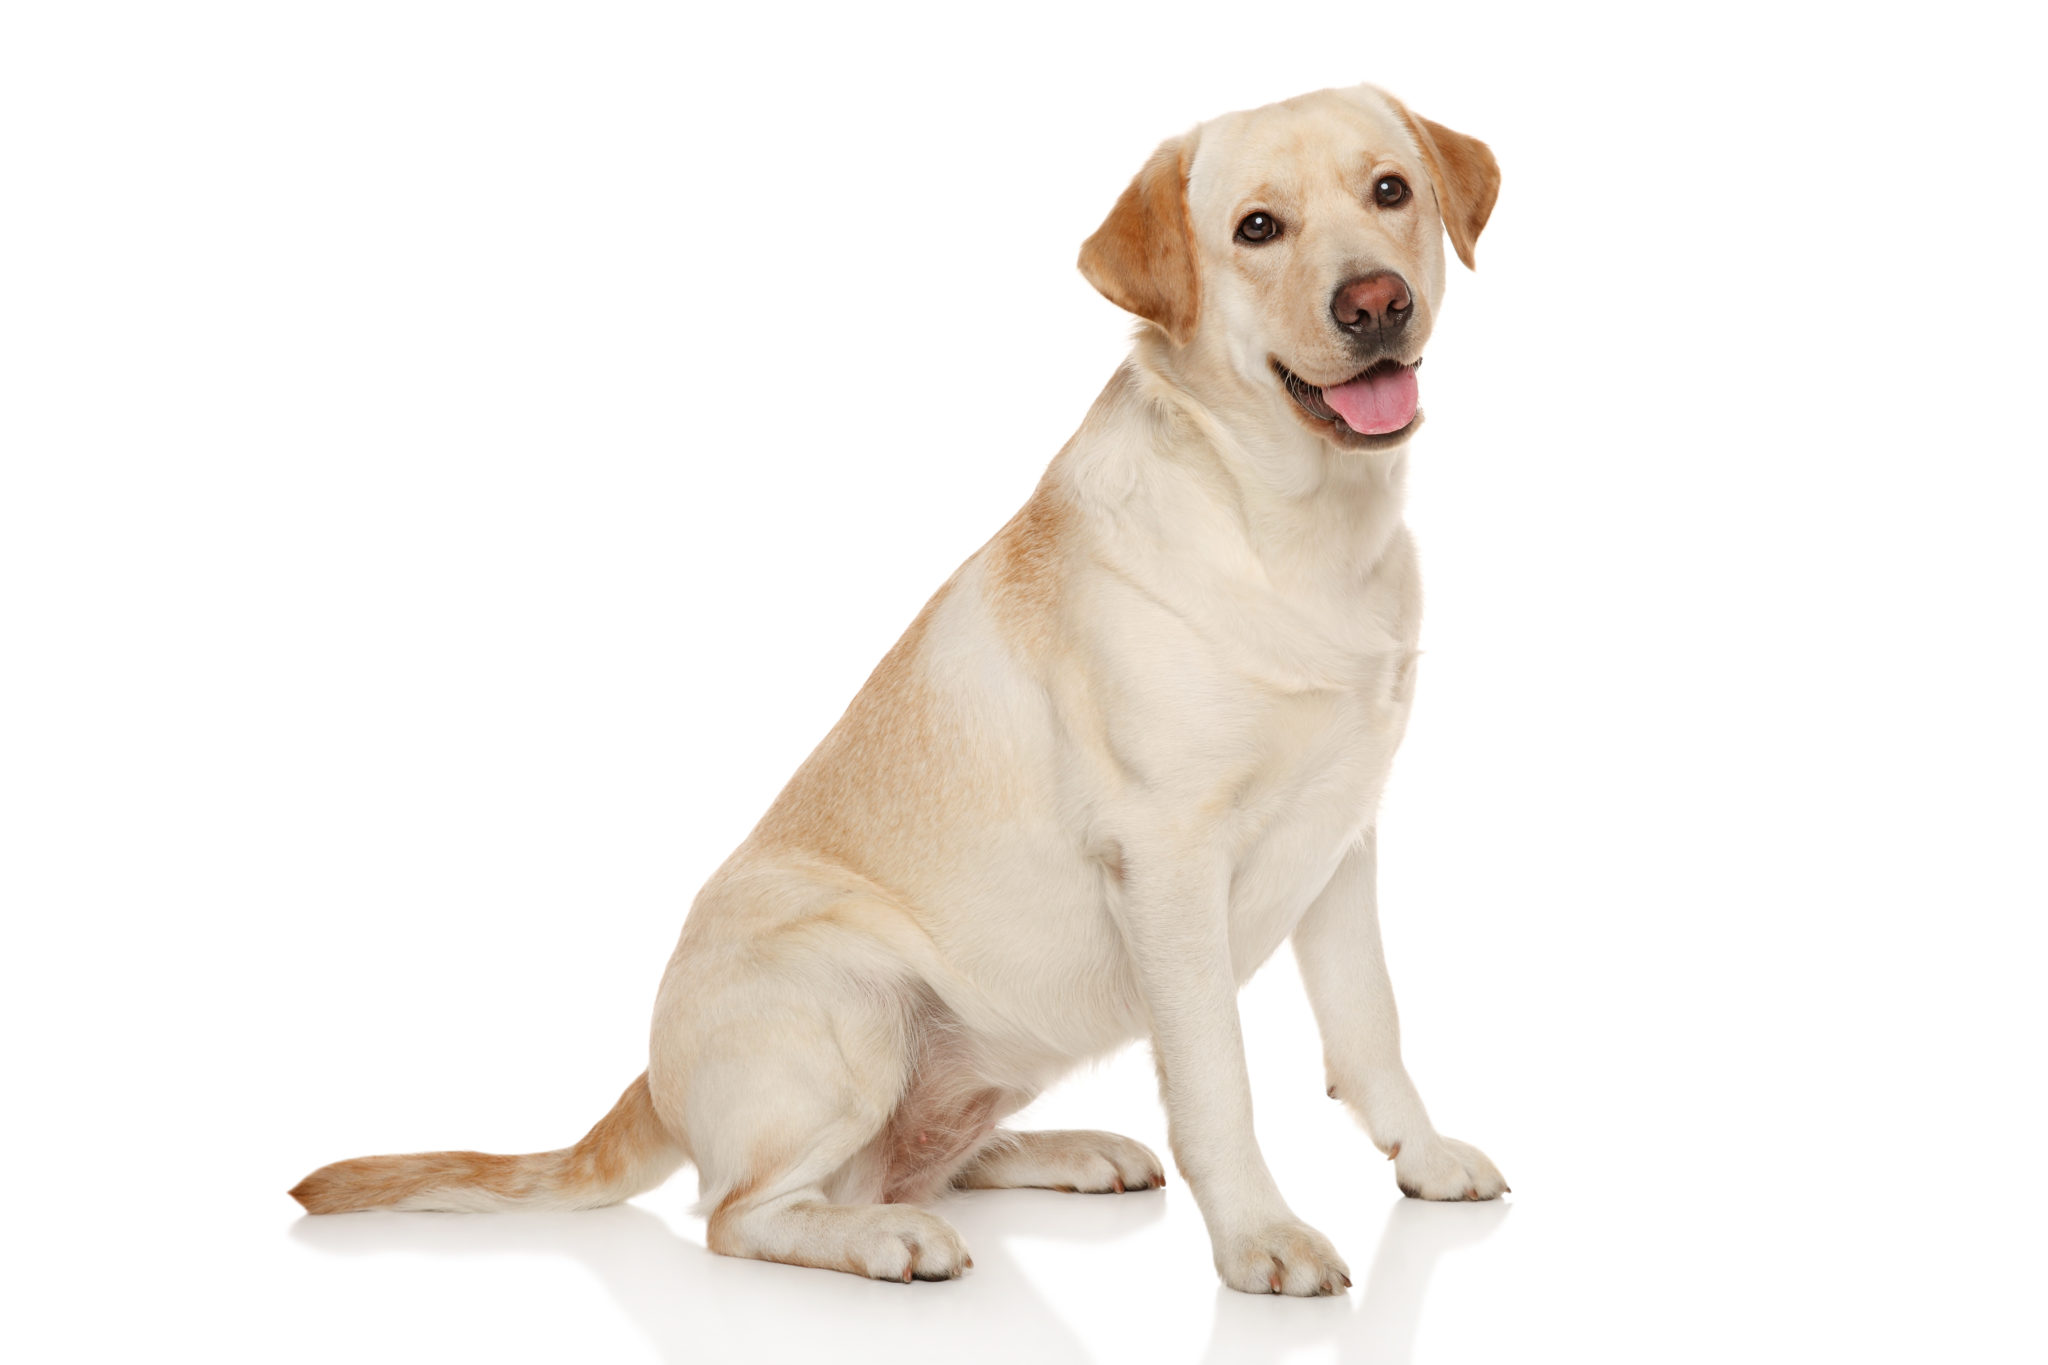 Större hundar drabbas ofta av artroser i höften. Ultraljudet kan lindra.